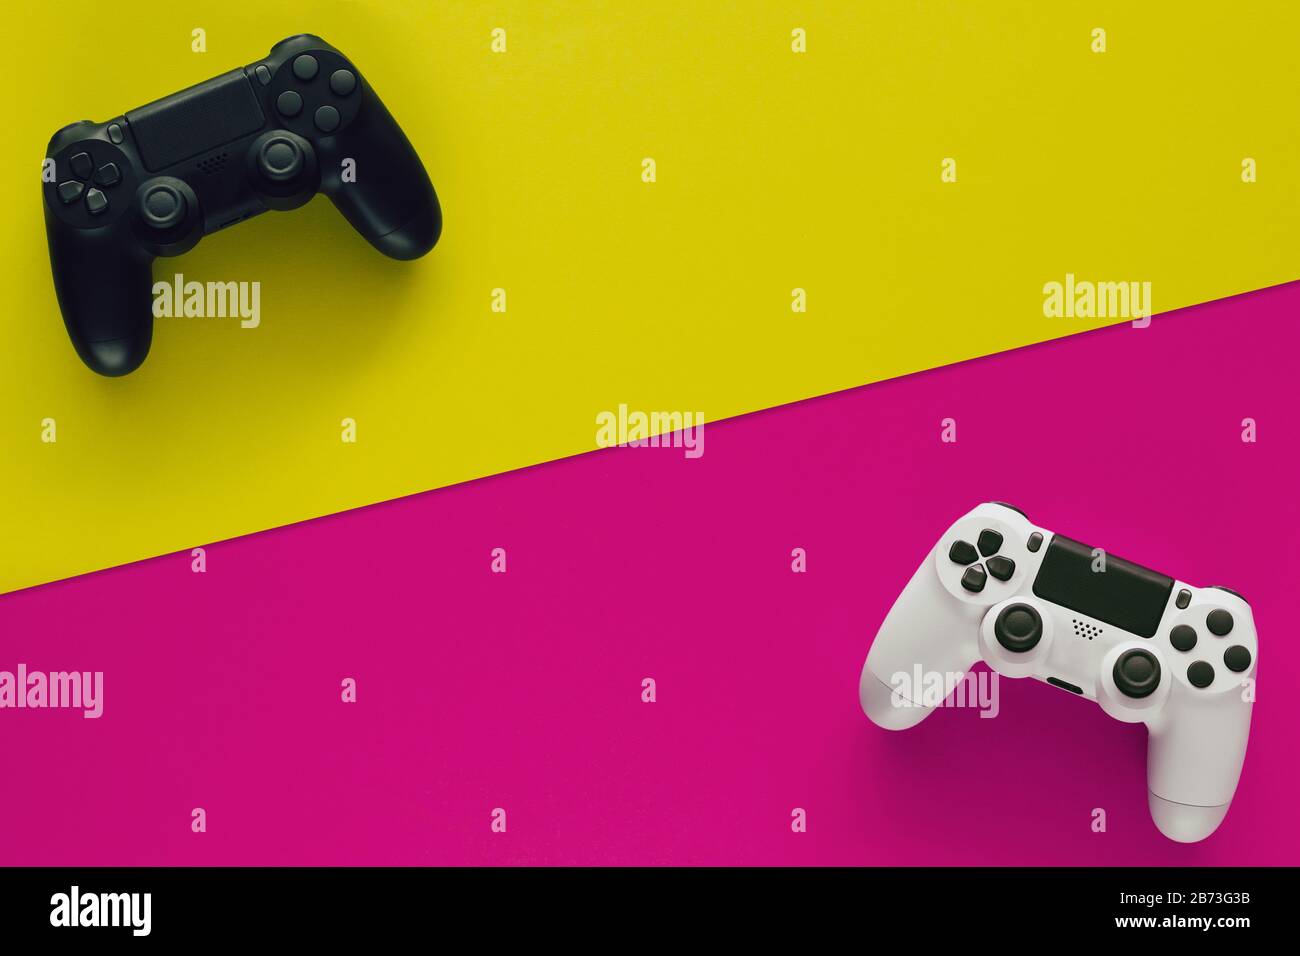 Stock-Foto von zwei Gamepads auf zwei farbigen Hintergründen und Kopierbereich in der Mitte Stockfoto